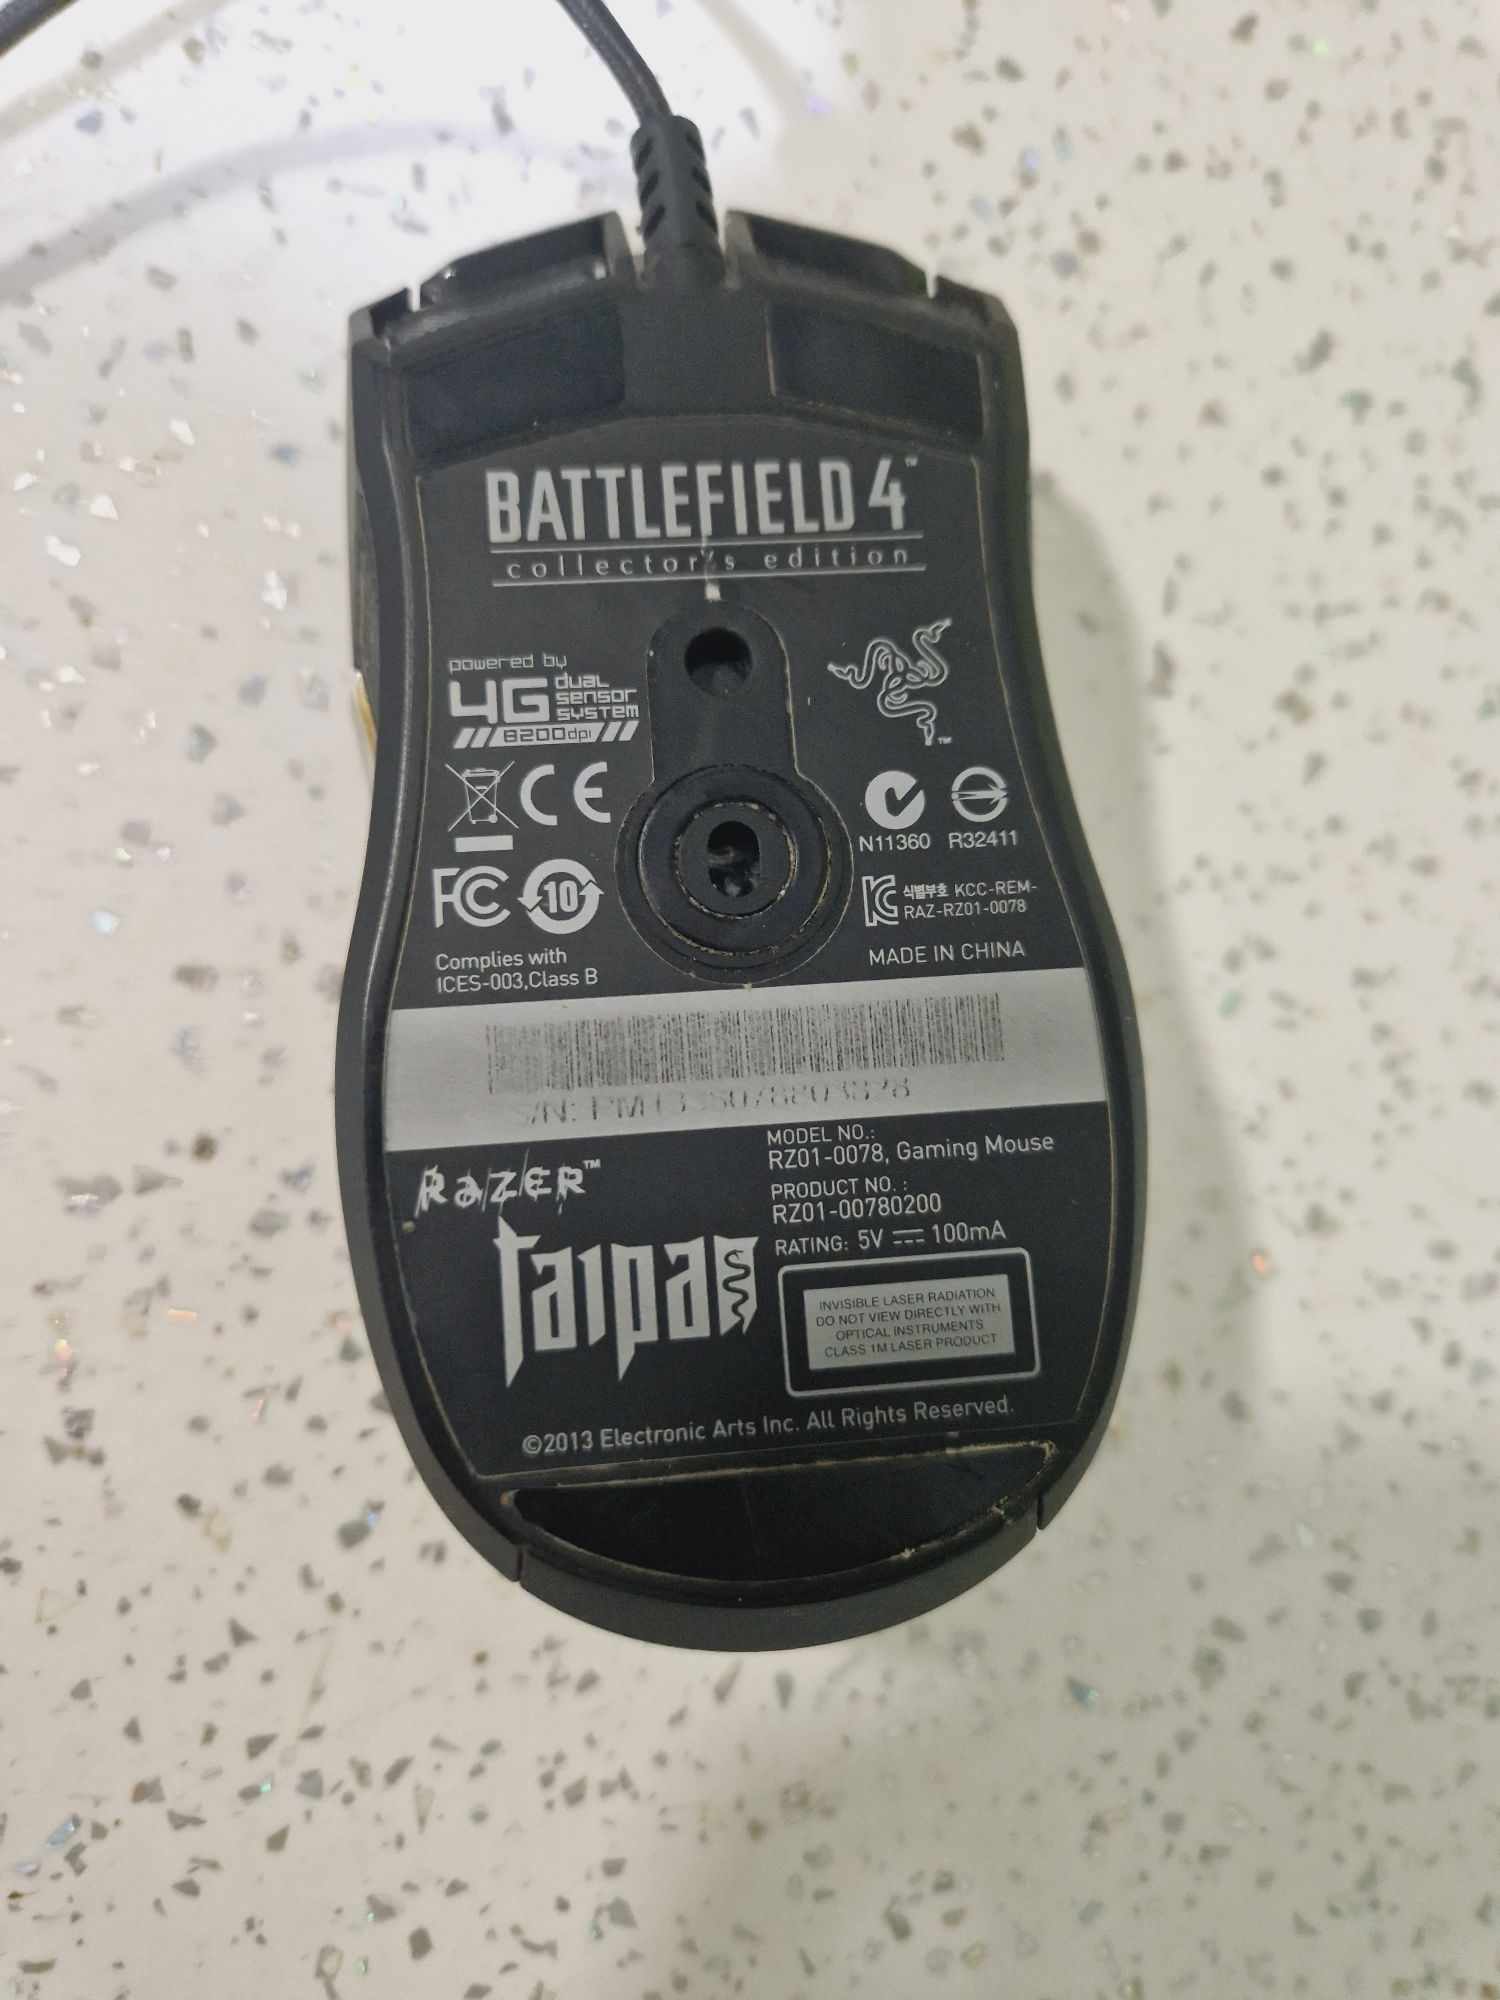 Battlefield 4 9 butoane 1 x roată USB cu fir Laser 8200 dpi